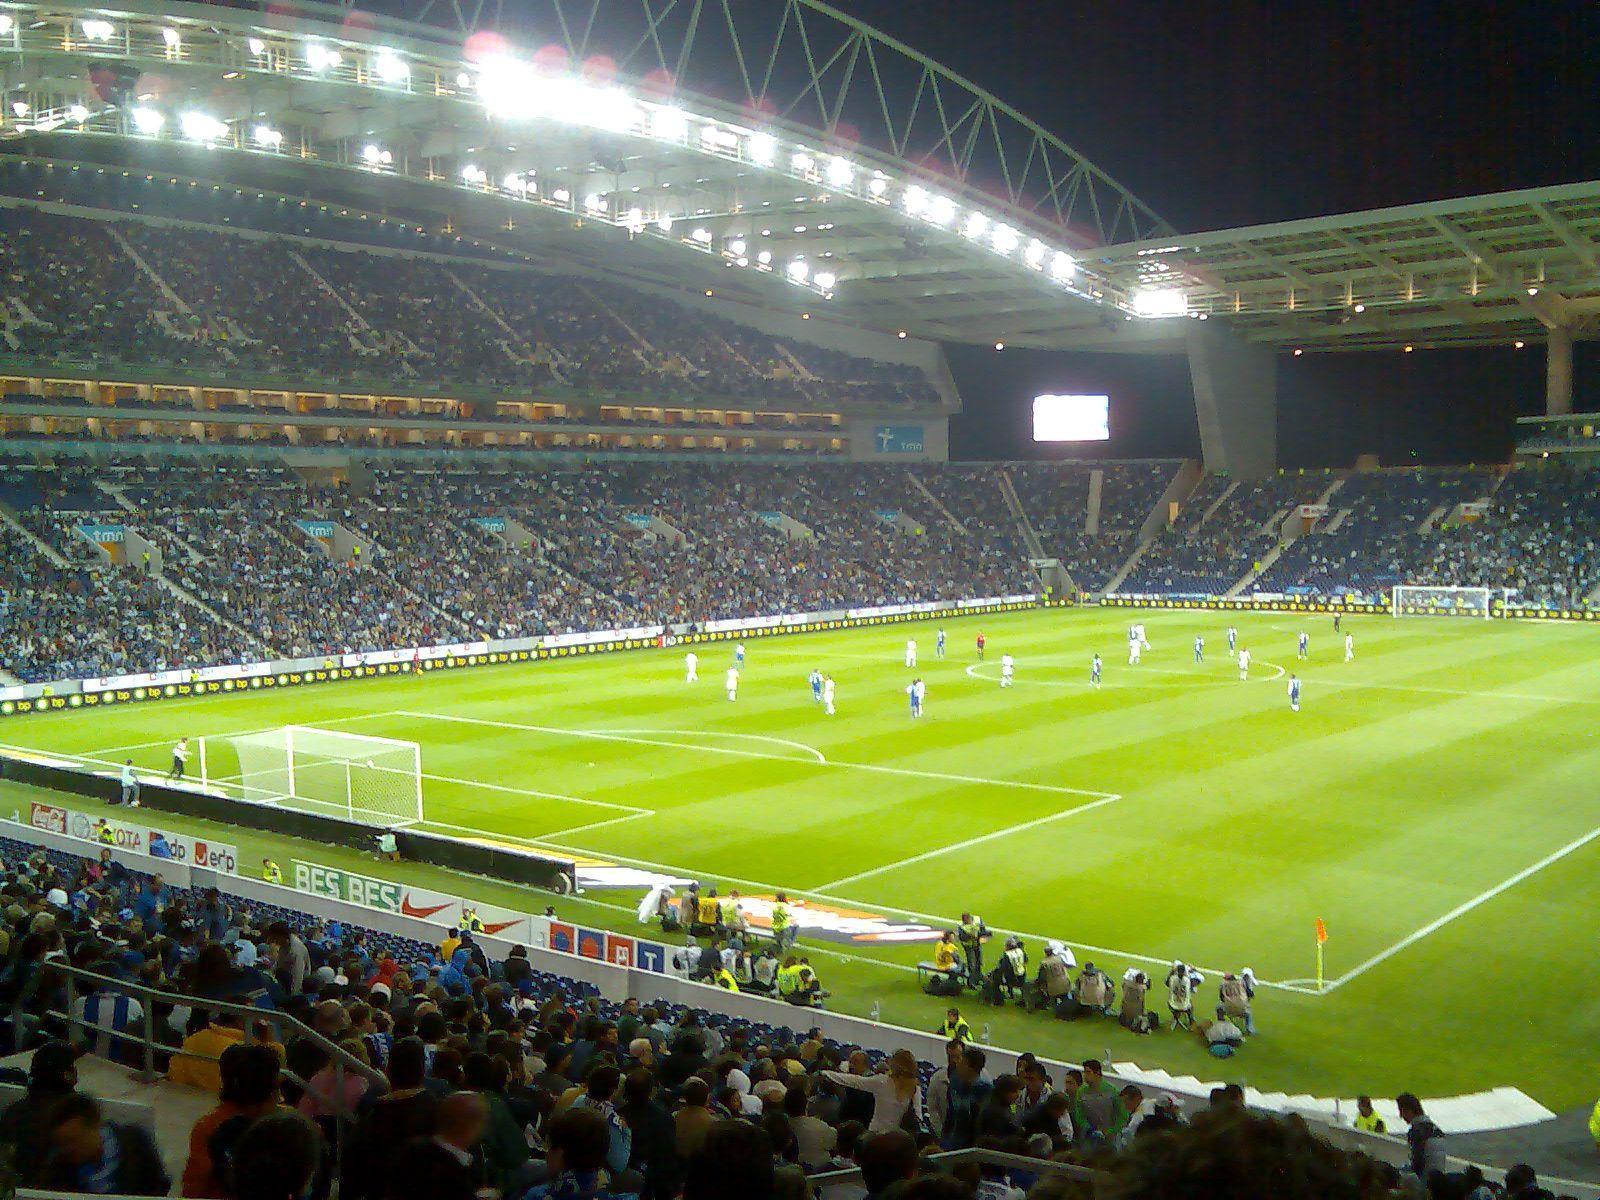 A semelhança entre Arena Corinthians e o Estádio do Dragão F.C